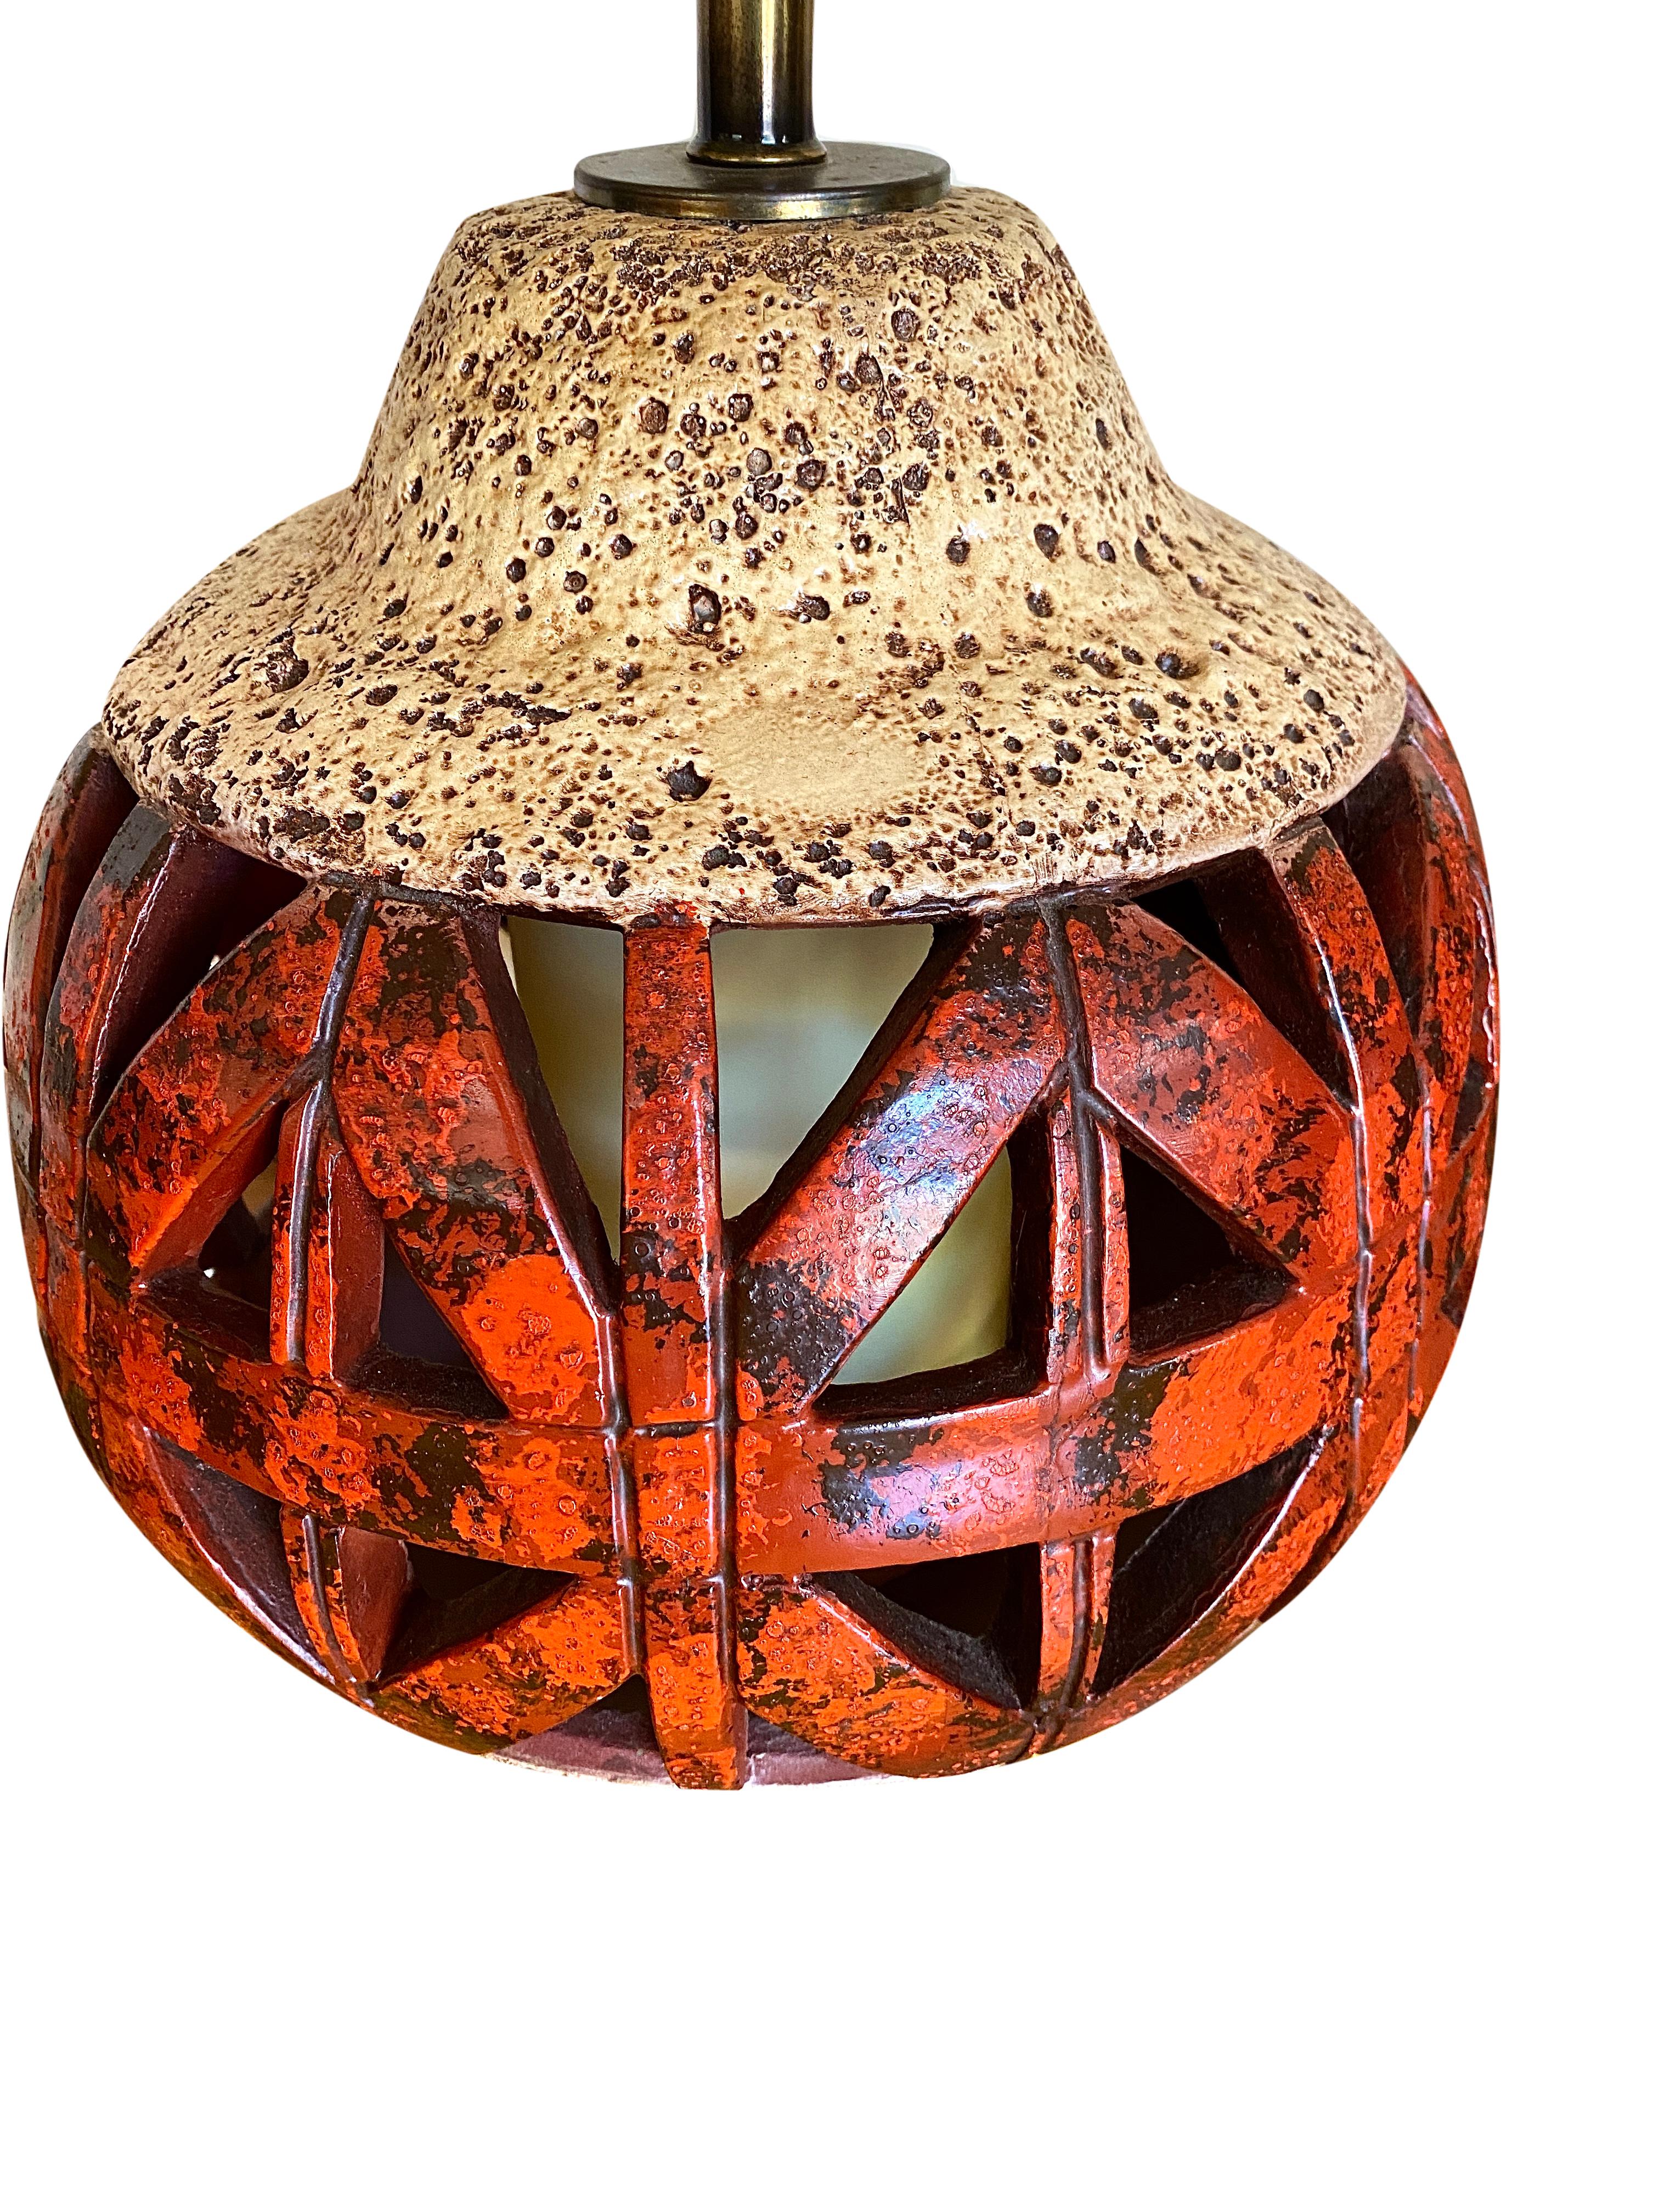 Pair of Mid Century Orange Ceramic Lamps In Good Condition For Sale In Mount Pleasant, SC